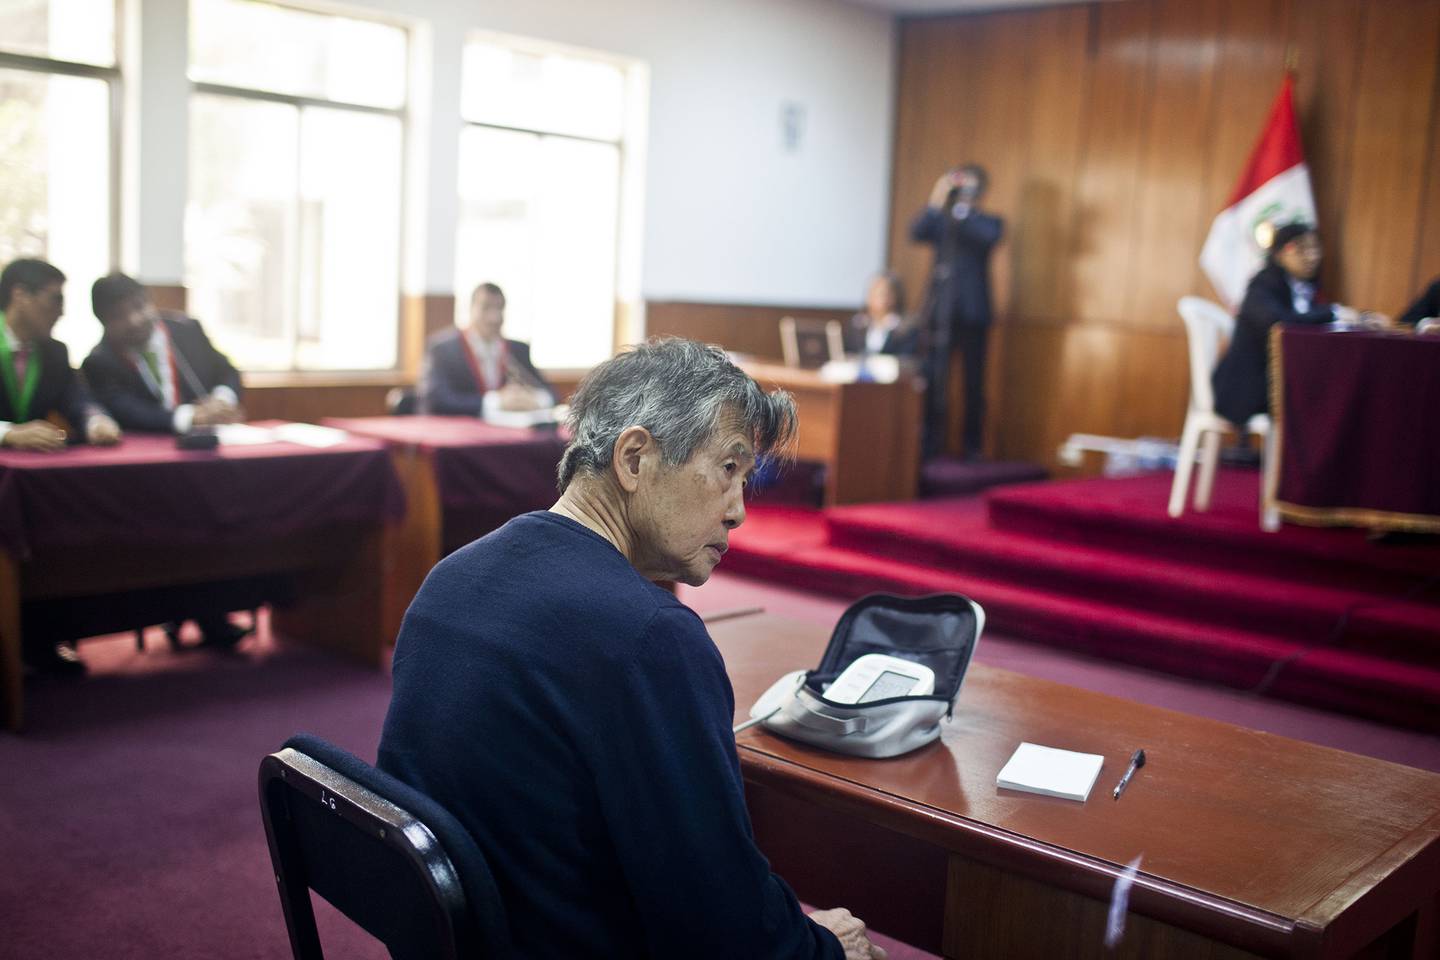 El expresidente de Perú (1990-2000) Alberto Fujimori controla su presión arterial antes de una audiencia en un tribunal de Lima, el 17 de octubre de 2013.Fotógrafo: ERNESTO BENAVIDES/AFPdfd